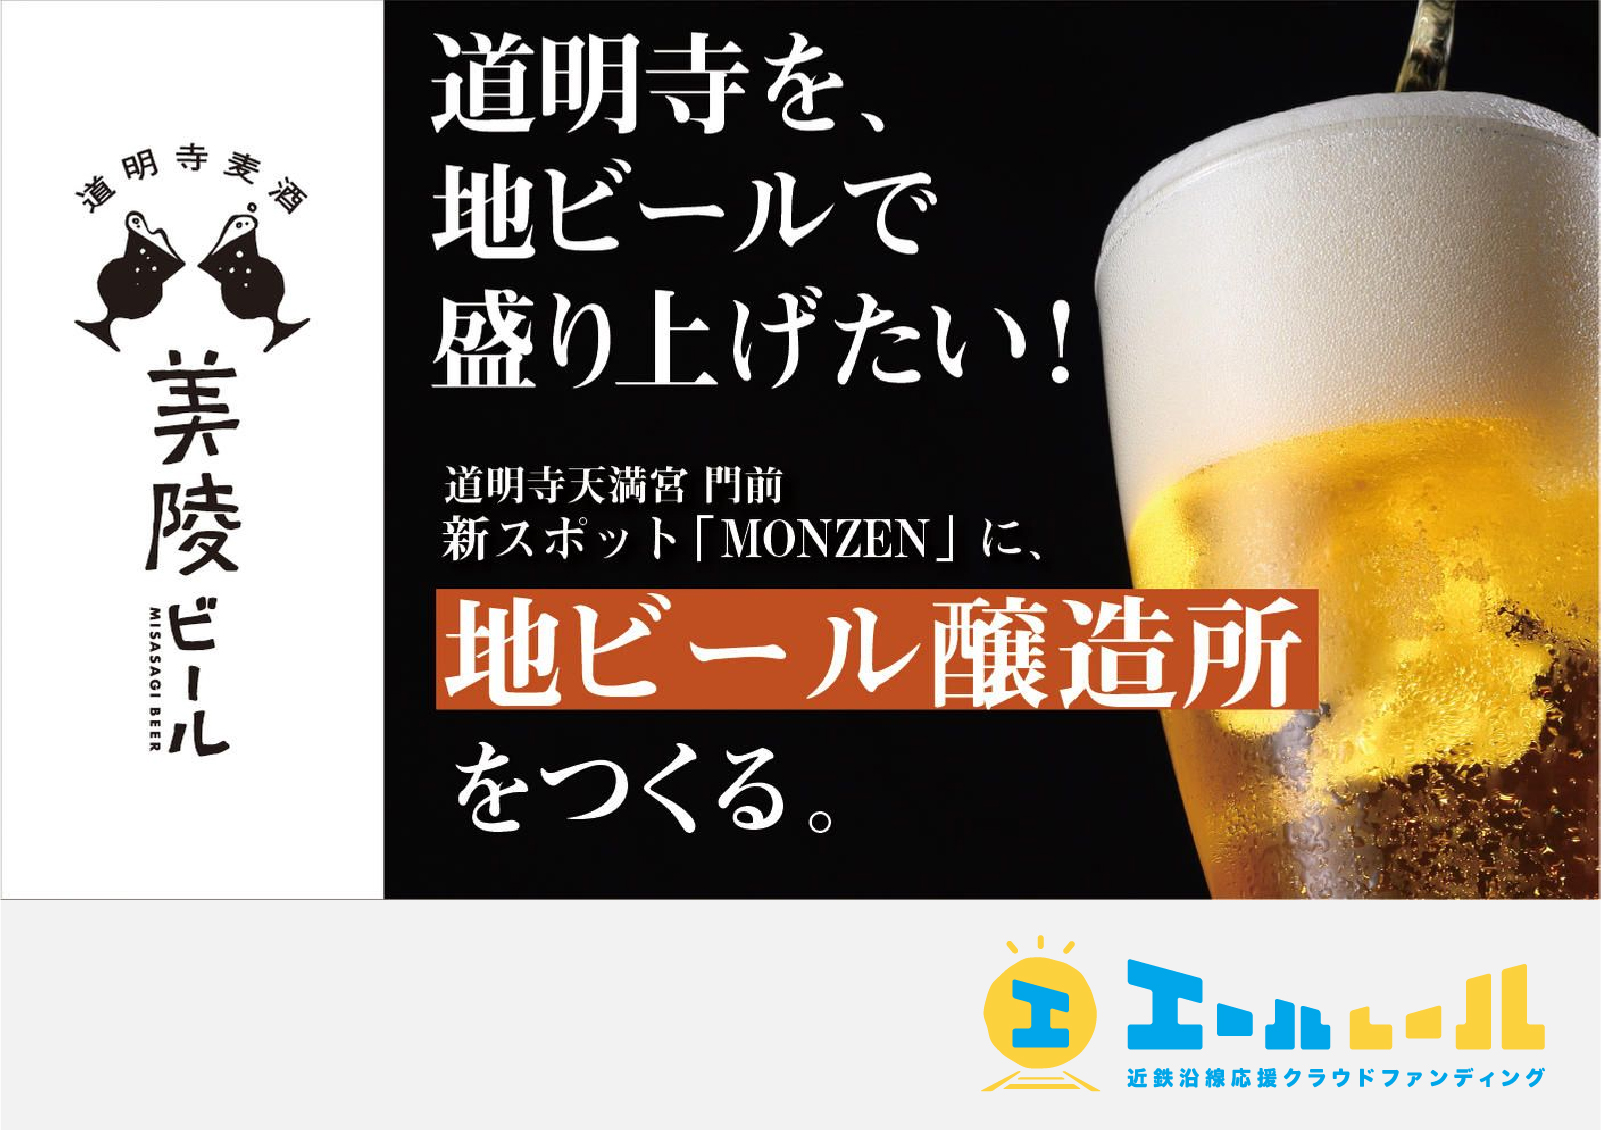 歴史ある道明寺を、地ビールで盛り上げたい！ 新スポット「MONZEN」に、地ビール醸造所をつくる。 - 01